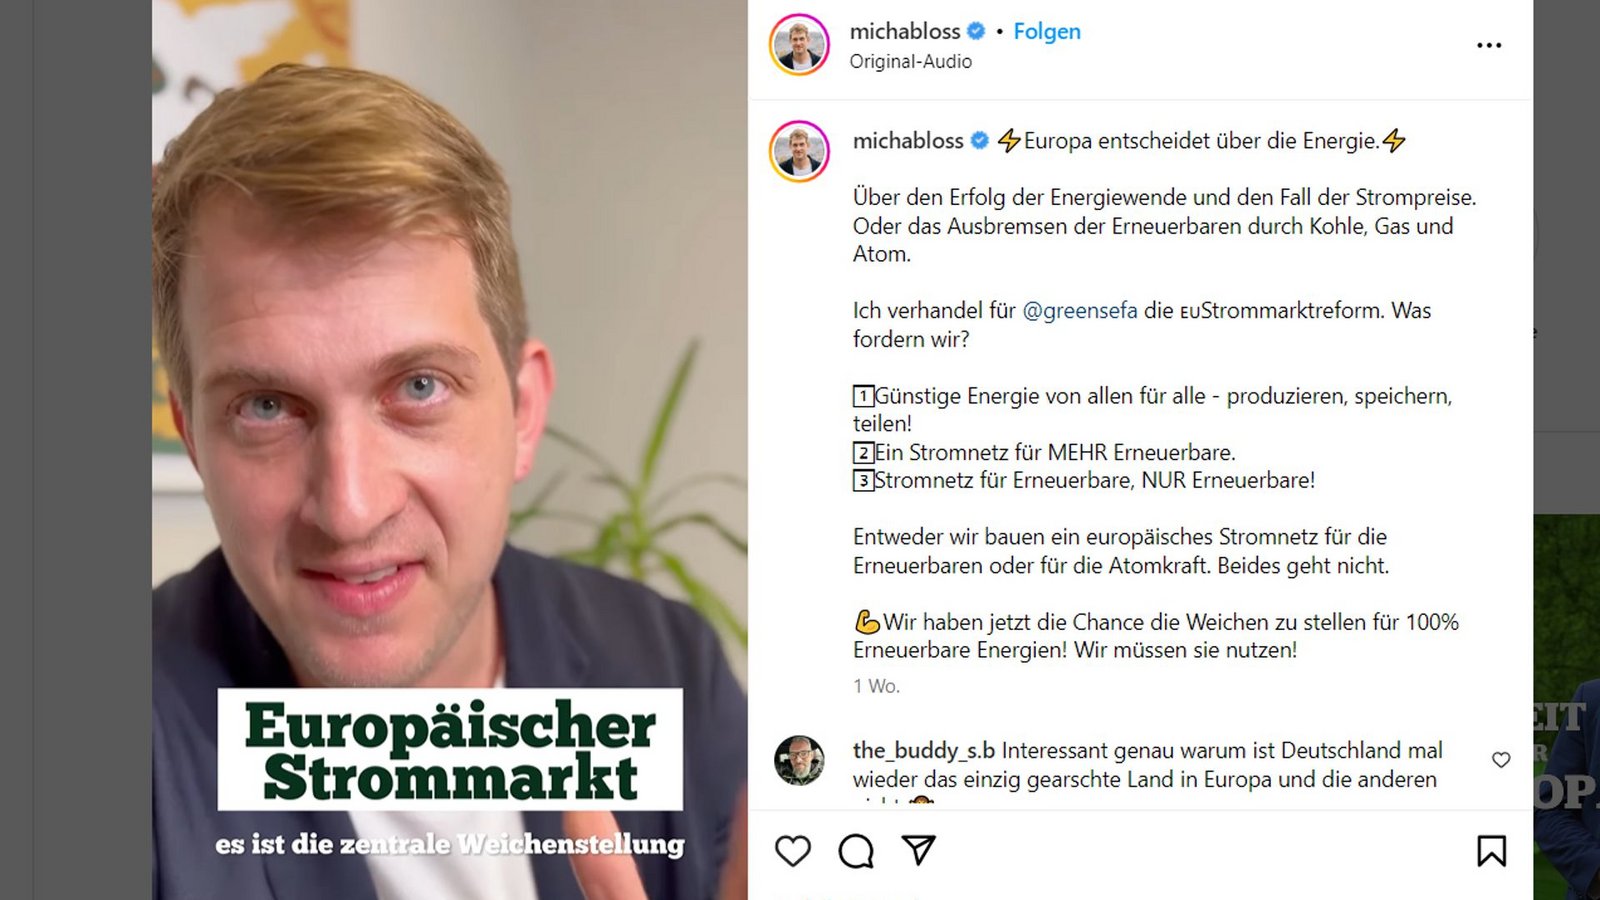 Der  Instagram-Auftritt des Stuttgarter EU-Abgeordneten Michael Bloss (Grüne)  wirkt professionell.Foto: Screensho/Instagram/michabloss